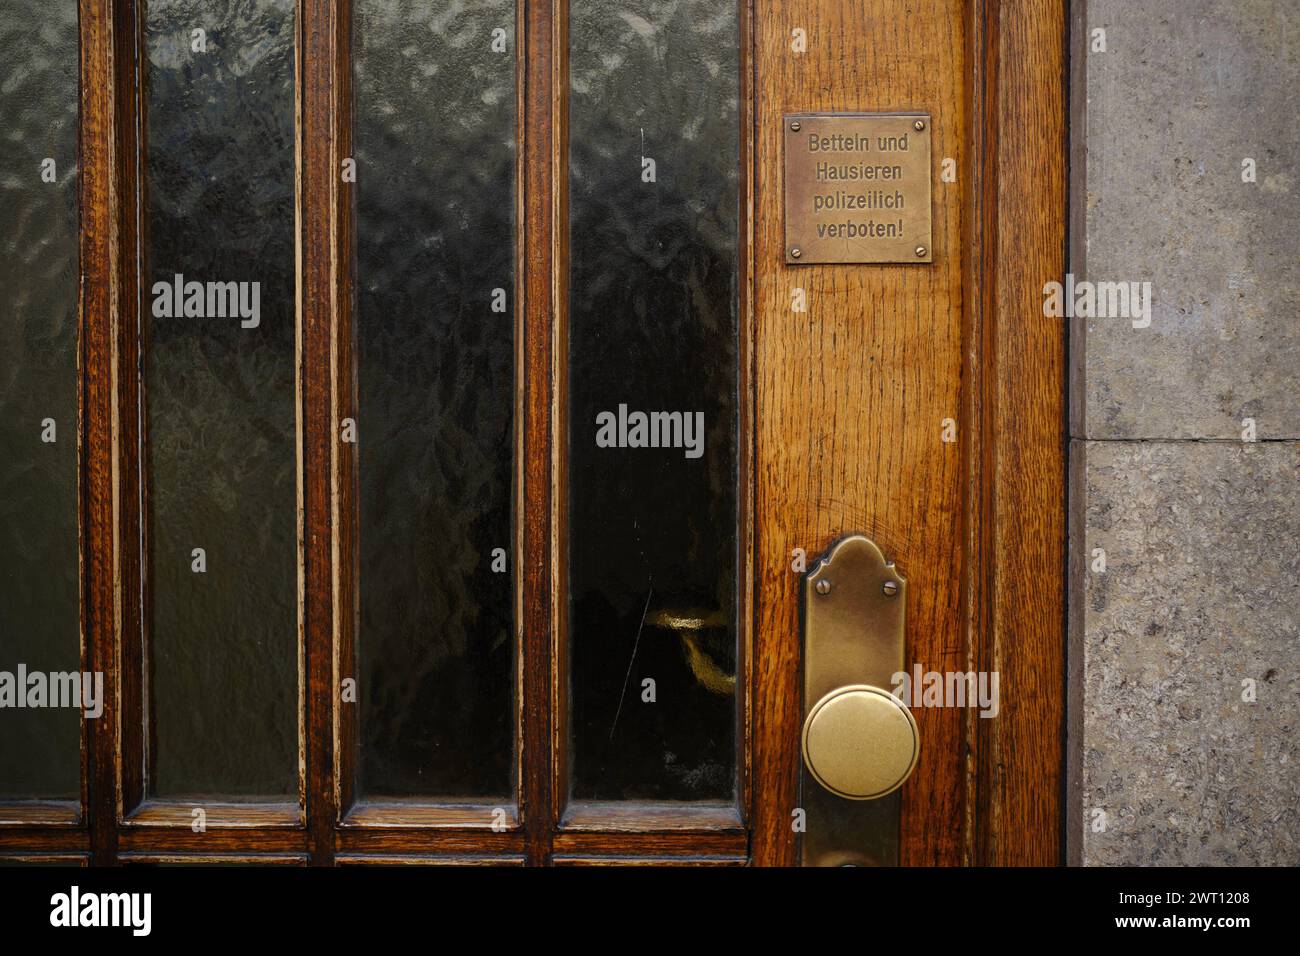 Betteln und Hausieren verboten Metallschild an brauner Holztür mit Aufschrift Betteln und Hausieren polizeilich verboten. Tür und Beschriftung scheine Banque D'Images